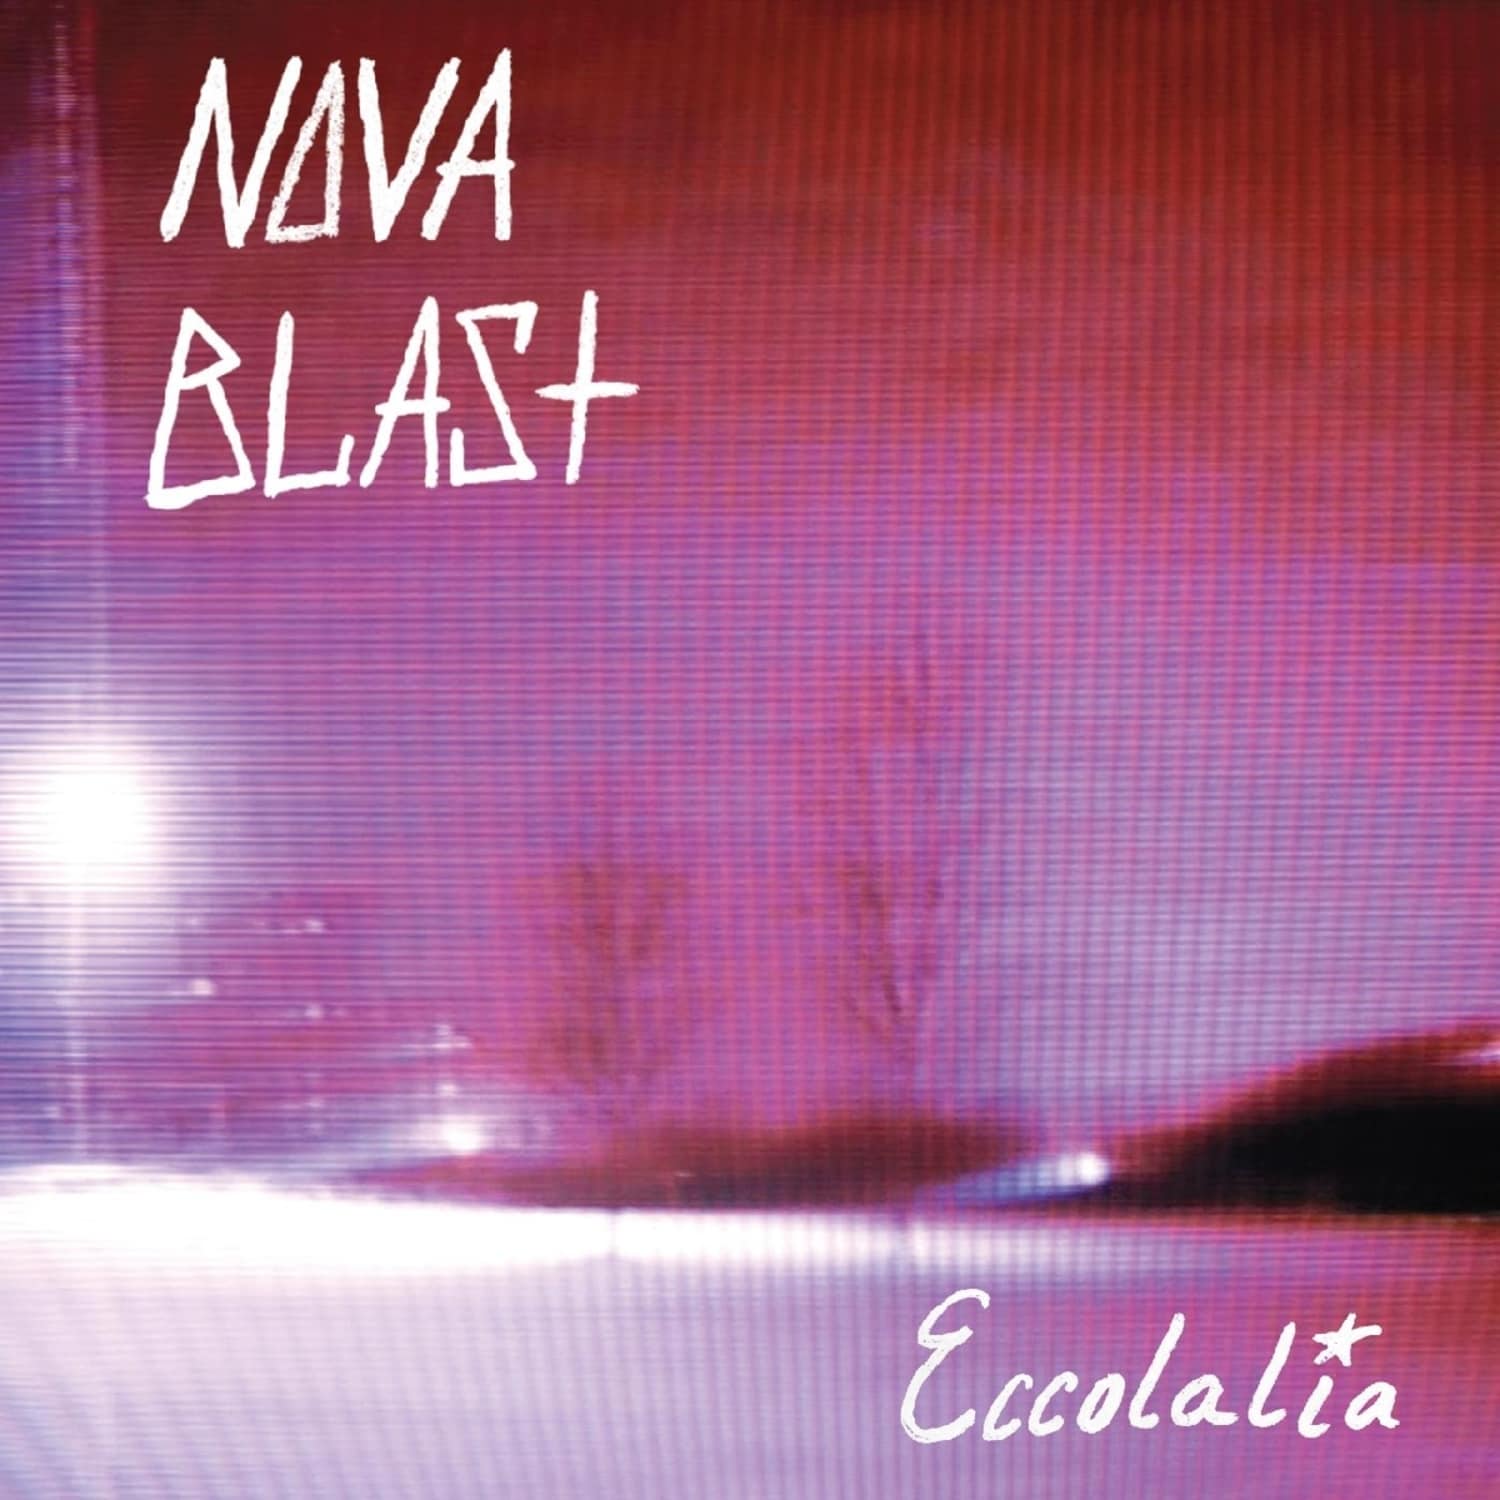 Nova Blast - ECCOLALIA 